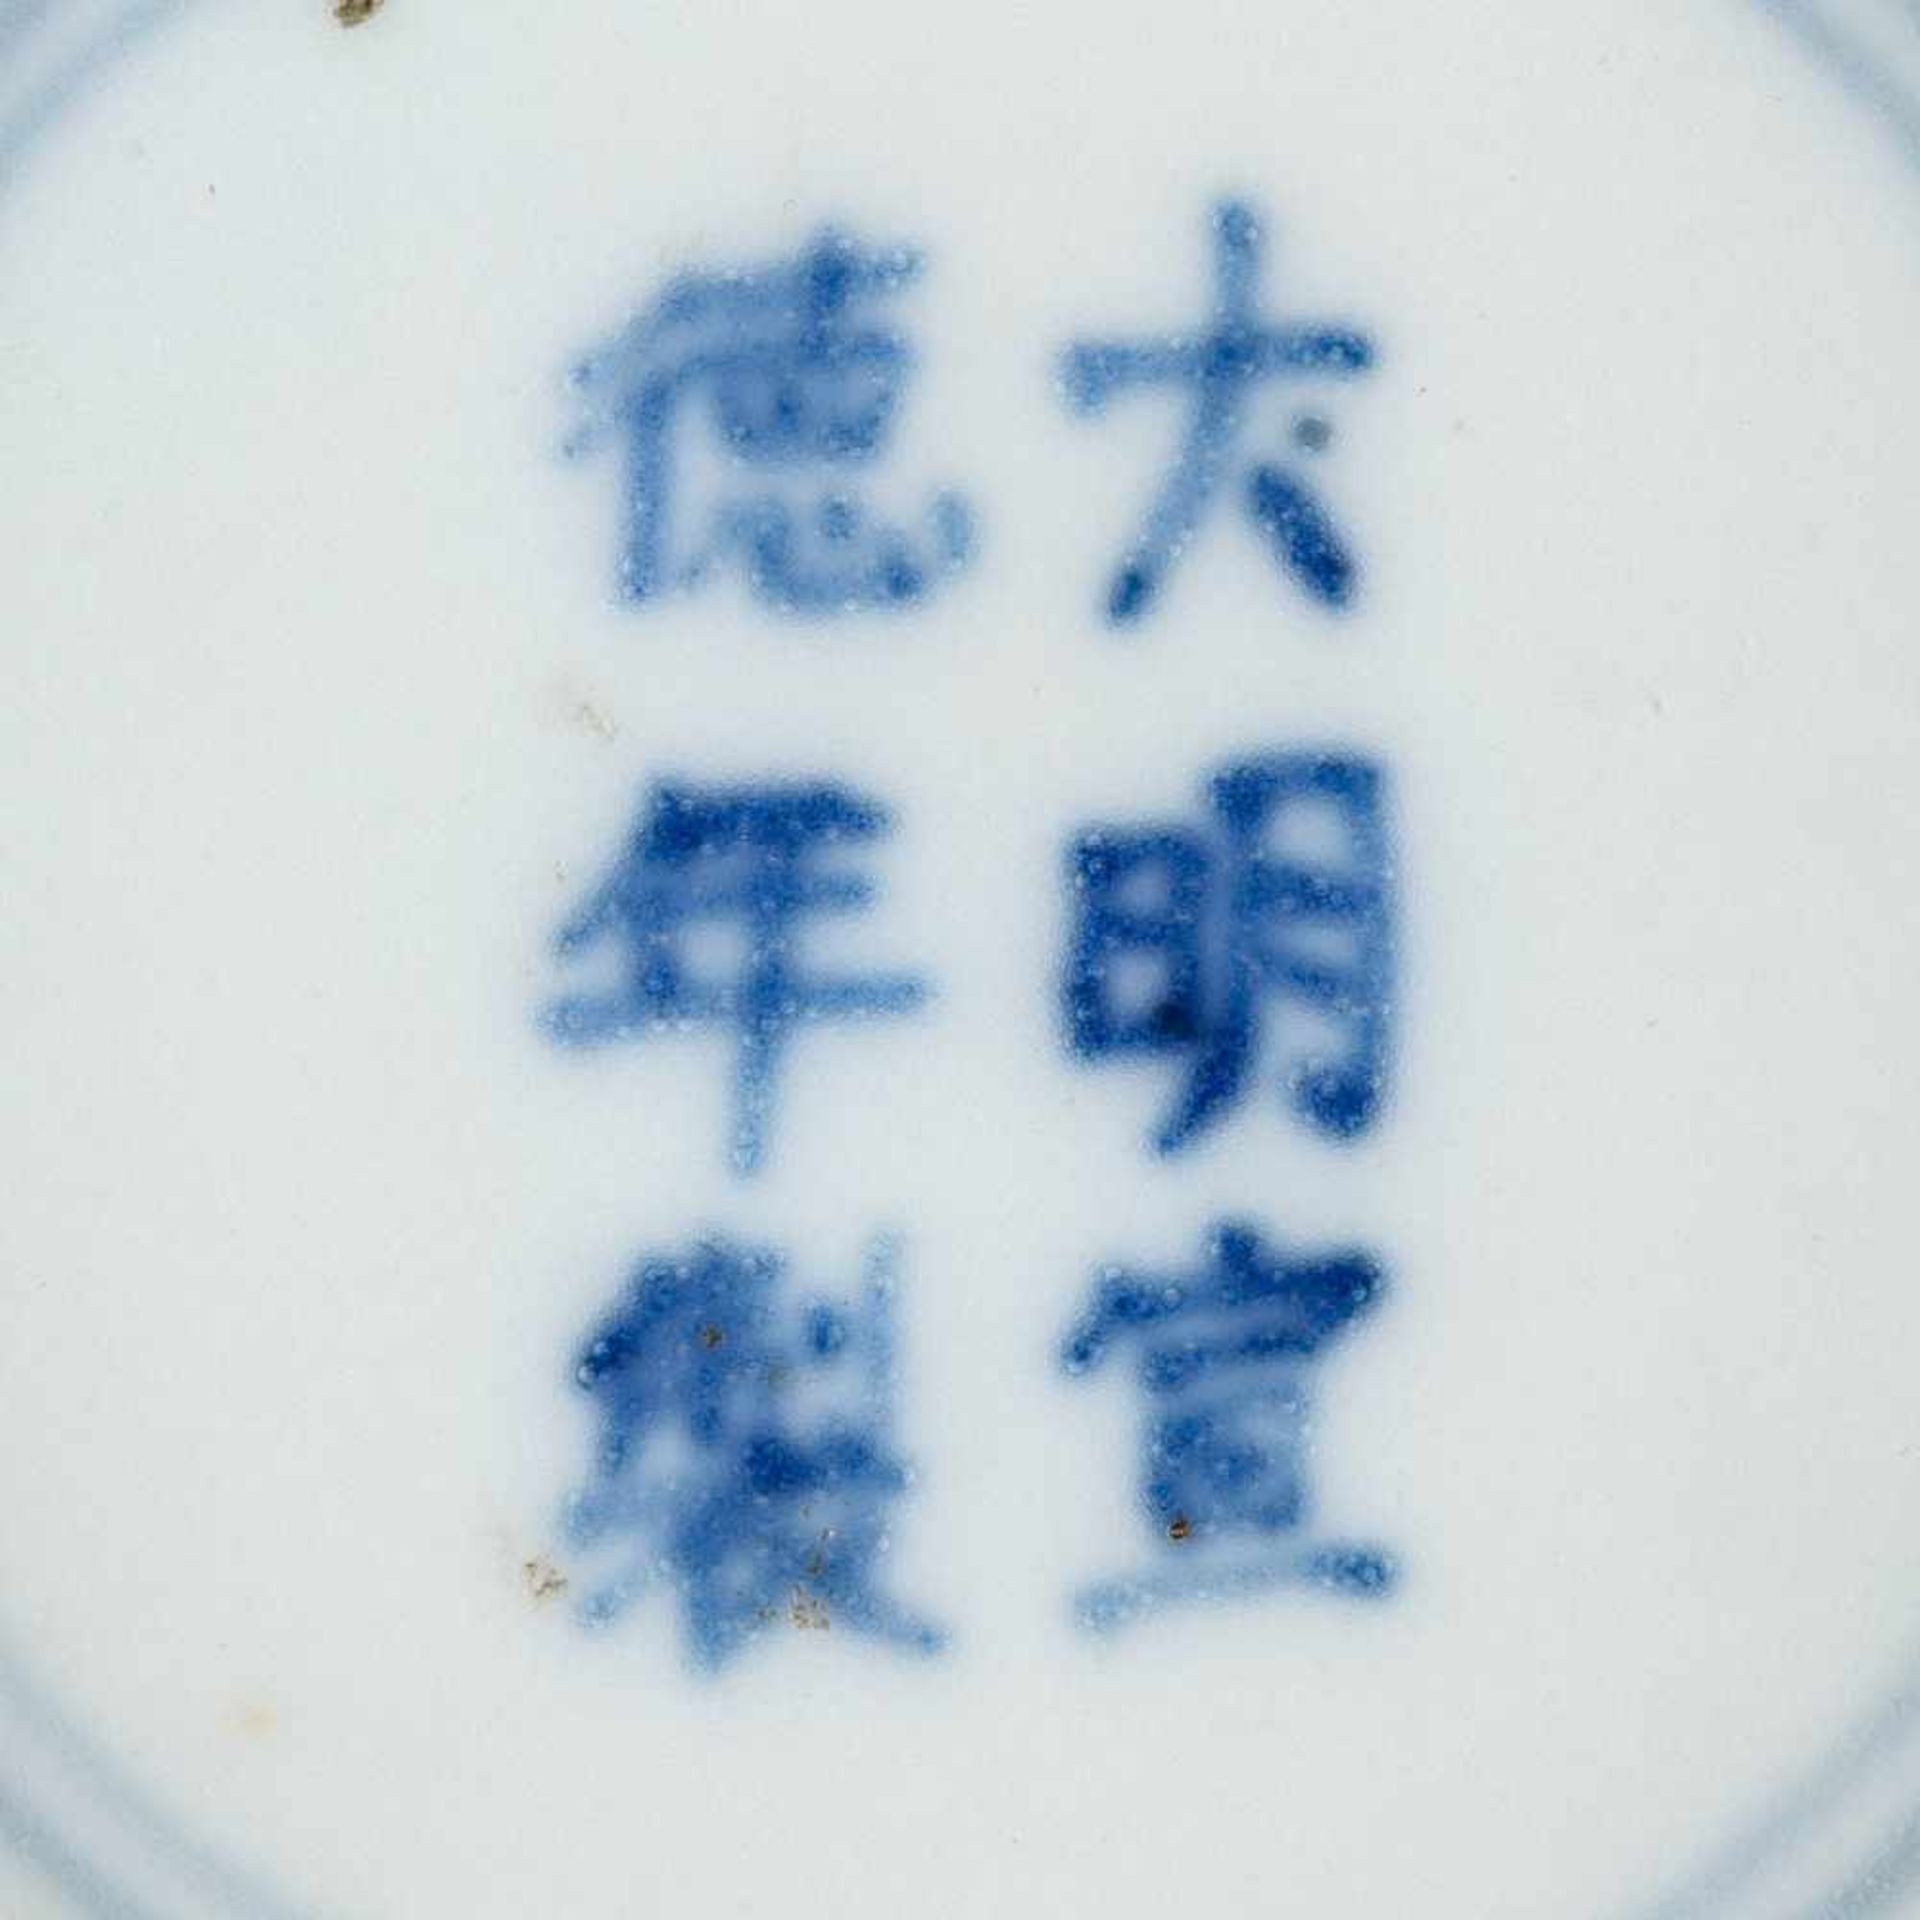 KLEINE VASE MIT PFIRSISCHENDEKOR China, wohl um 1900 Porzellan, unterglasurblaue Malerei. H. 17,5 - Bild 2 aus 2